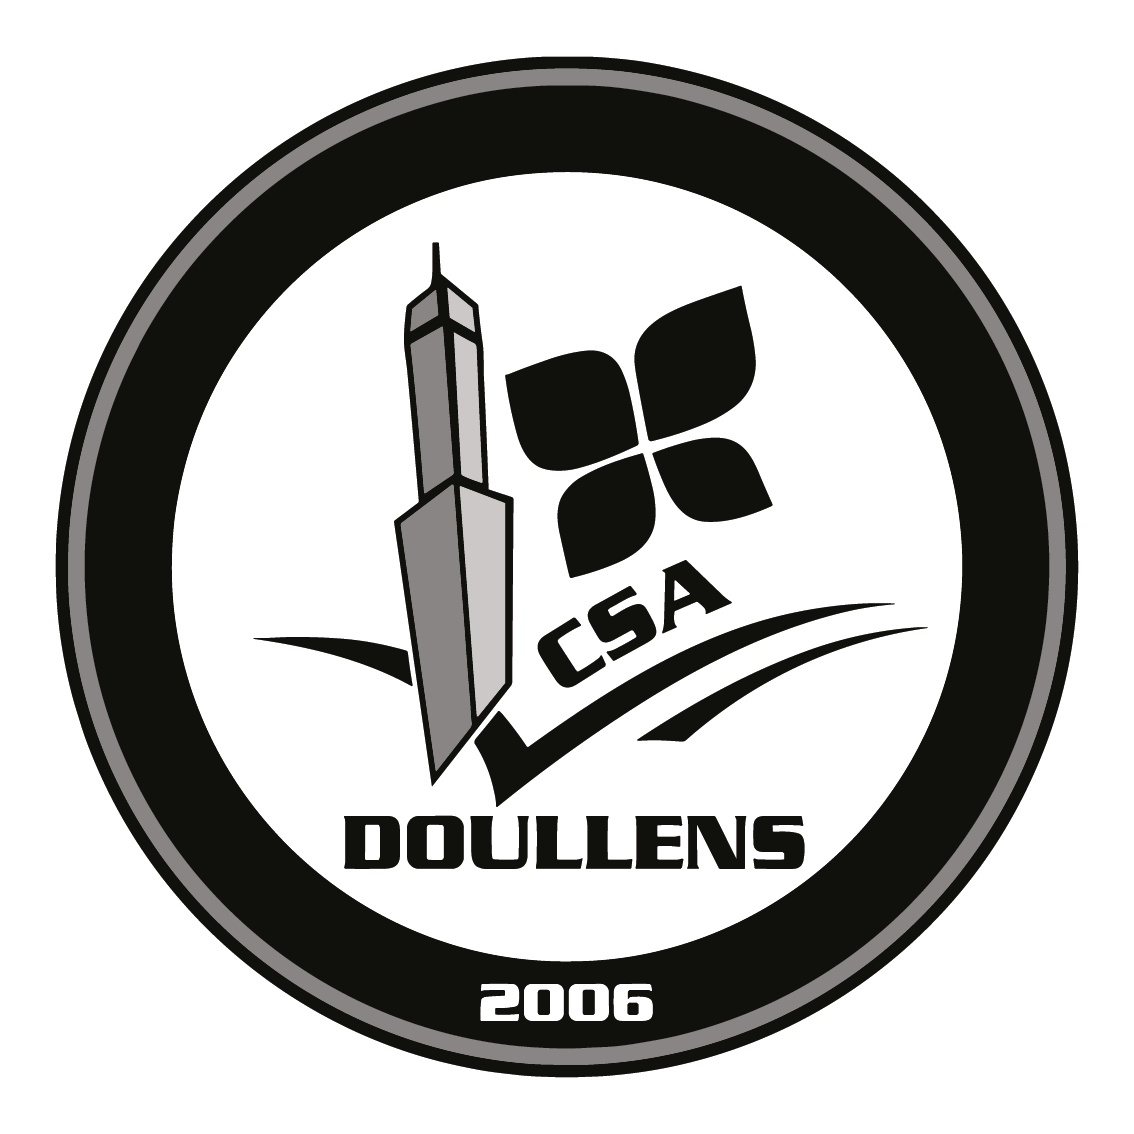 C. S. A. DE DOULLENS